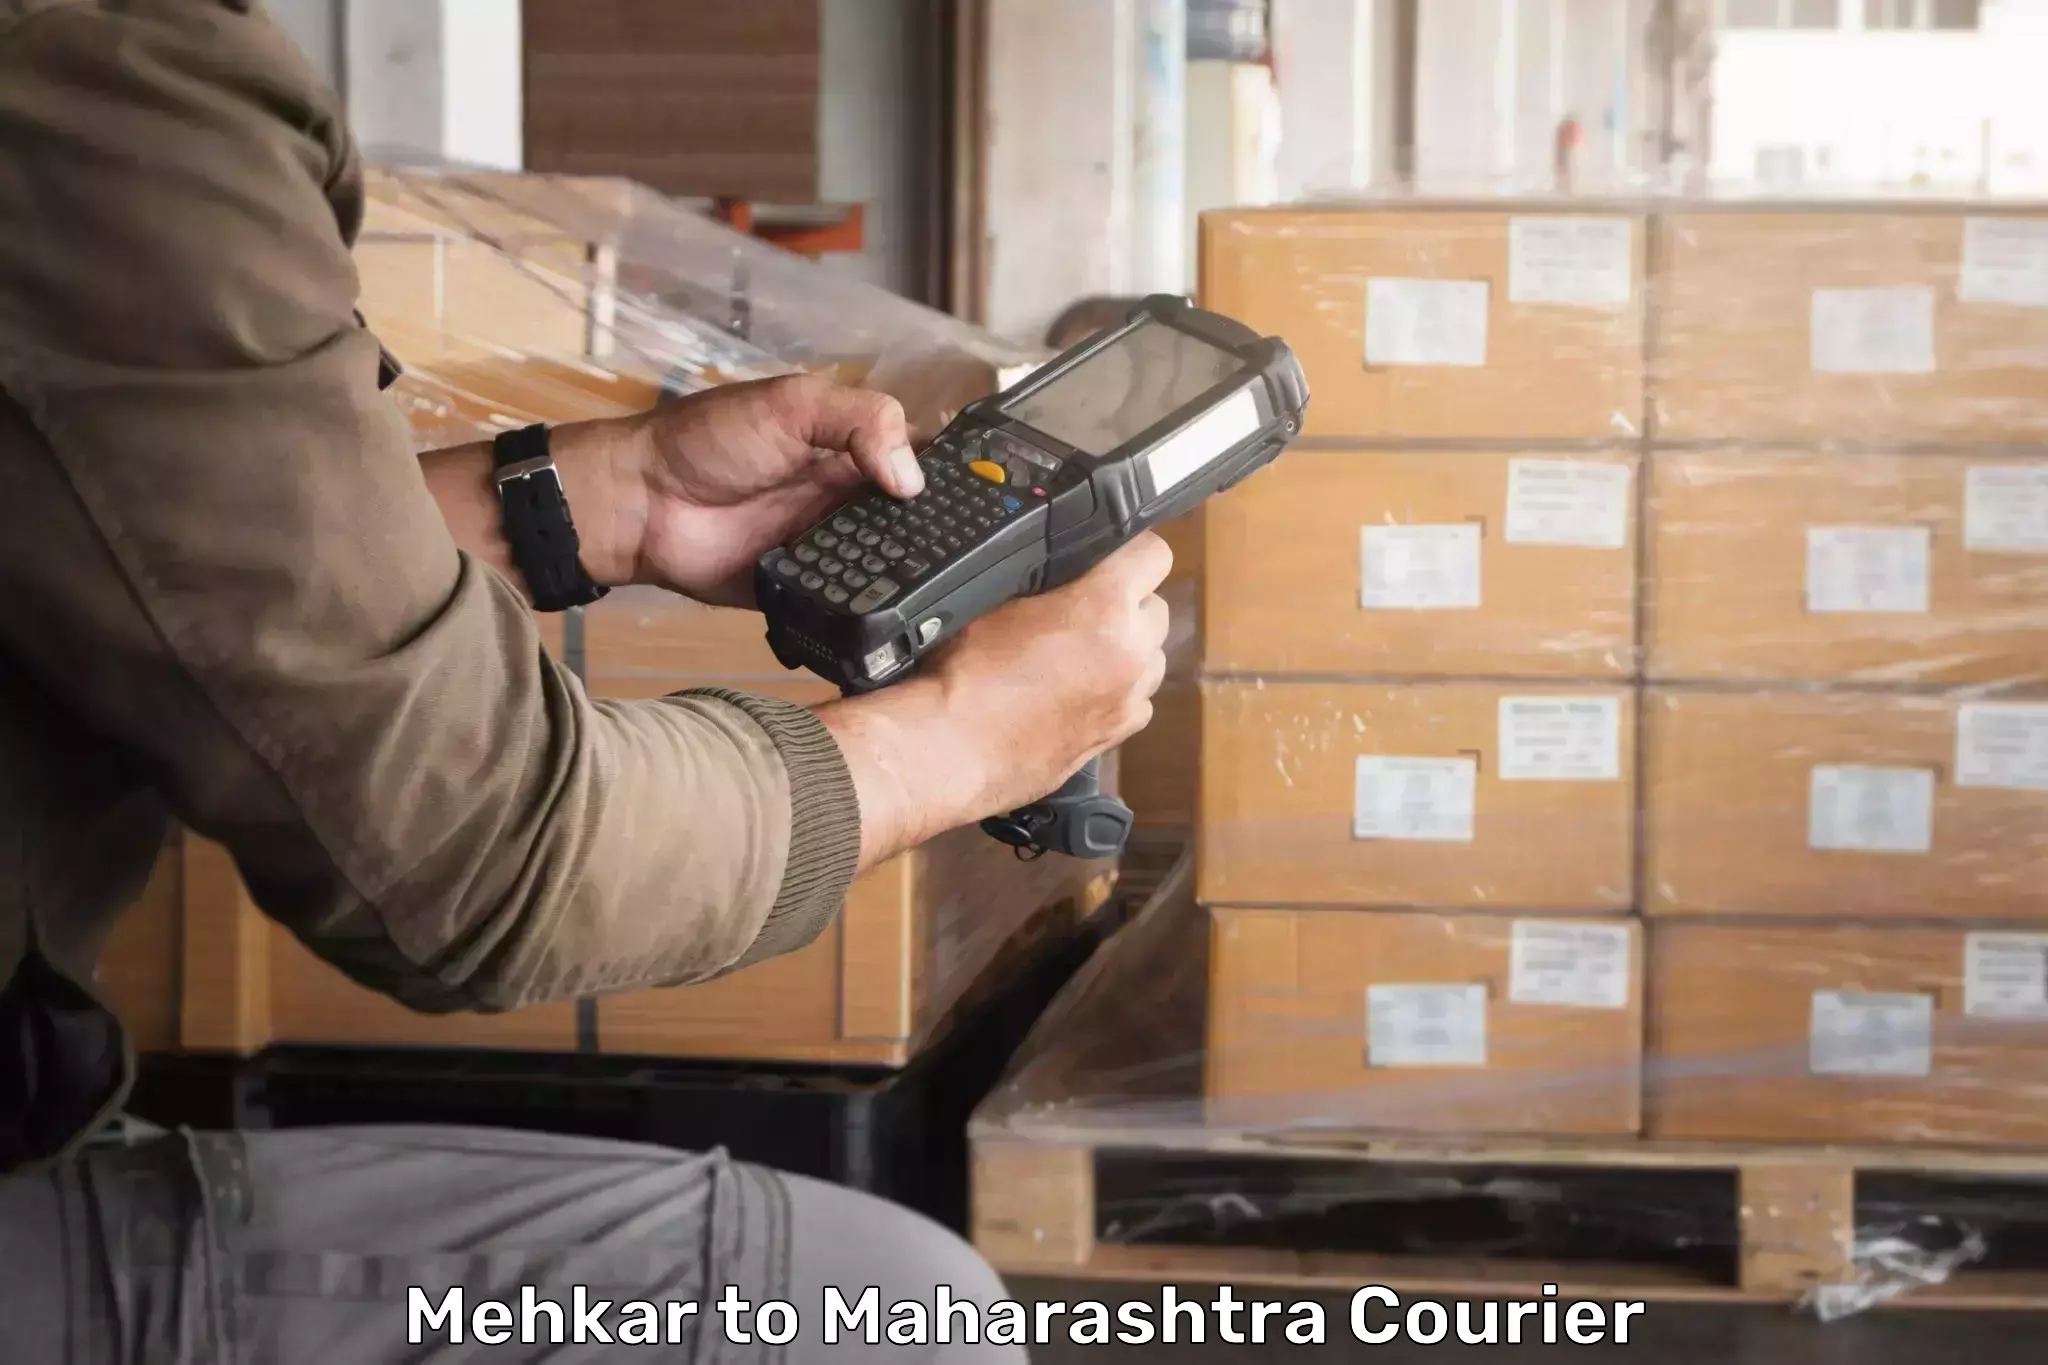 Custom courier packaging in Mehkar to Ratnagiri